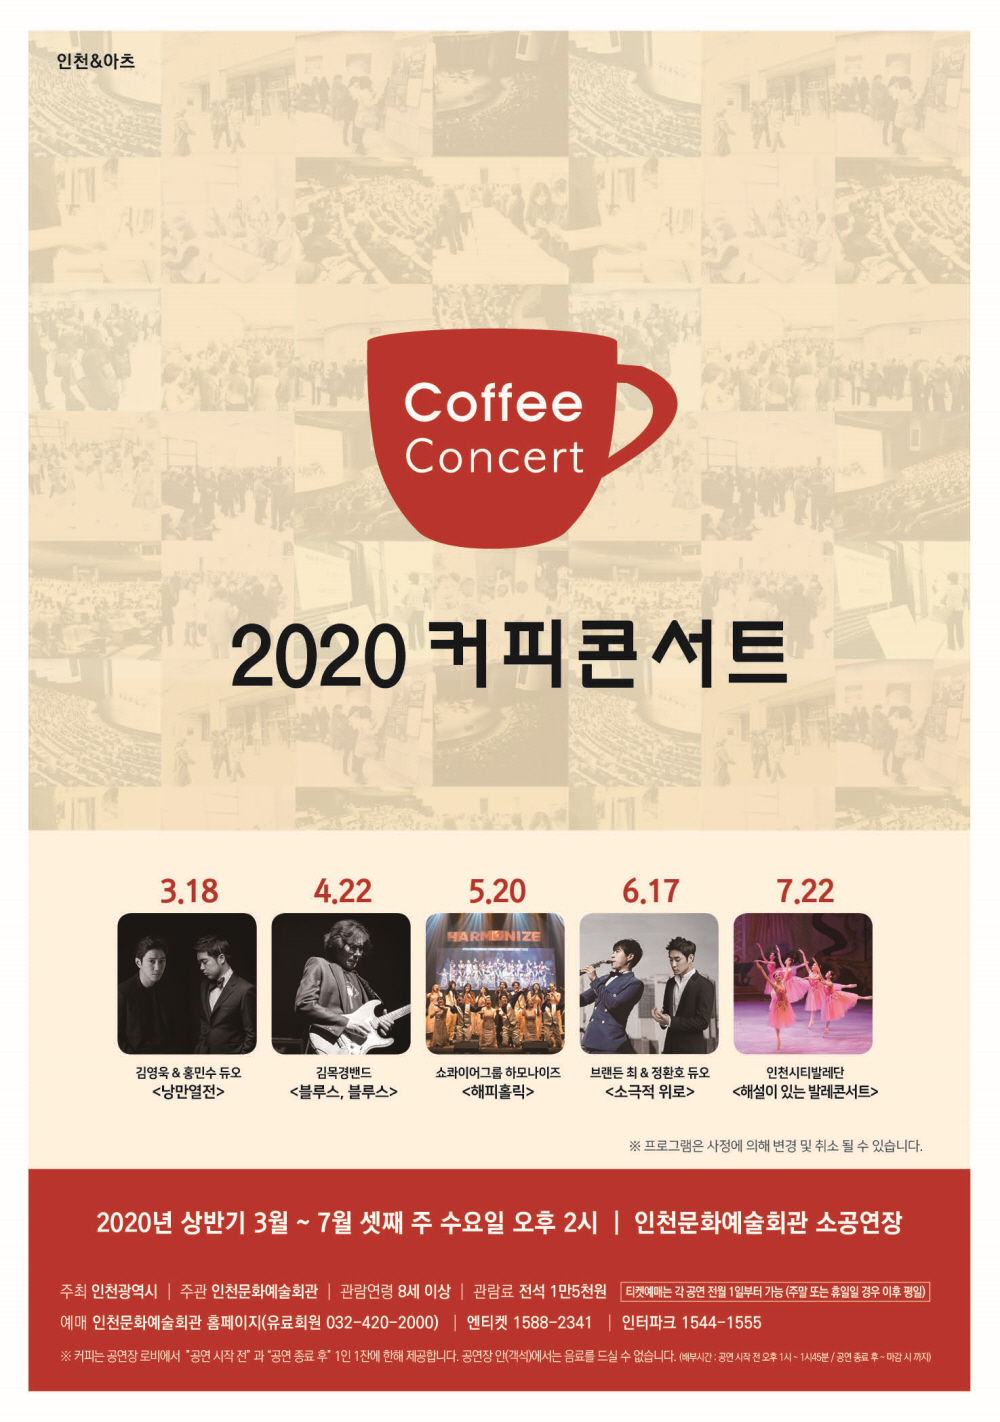 2020 커피콘서트(자세한 내용은 아래)